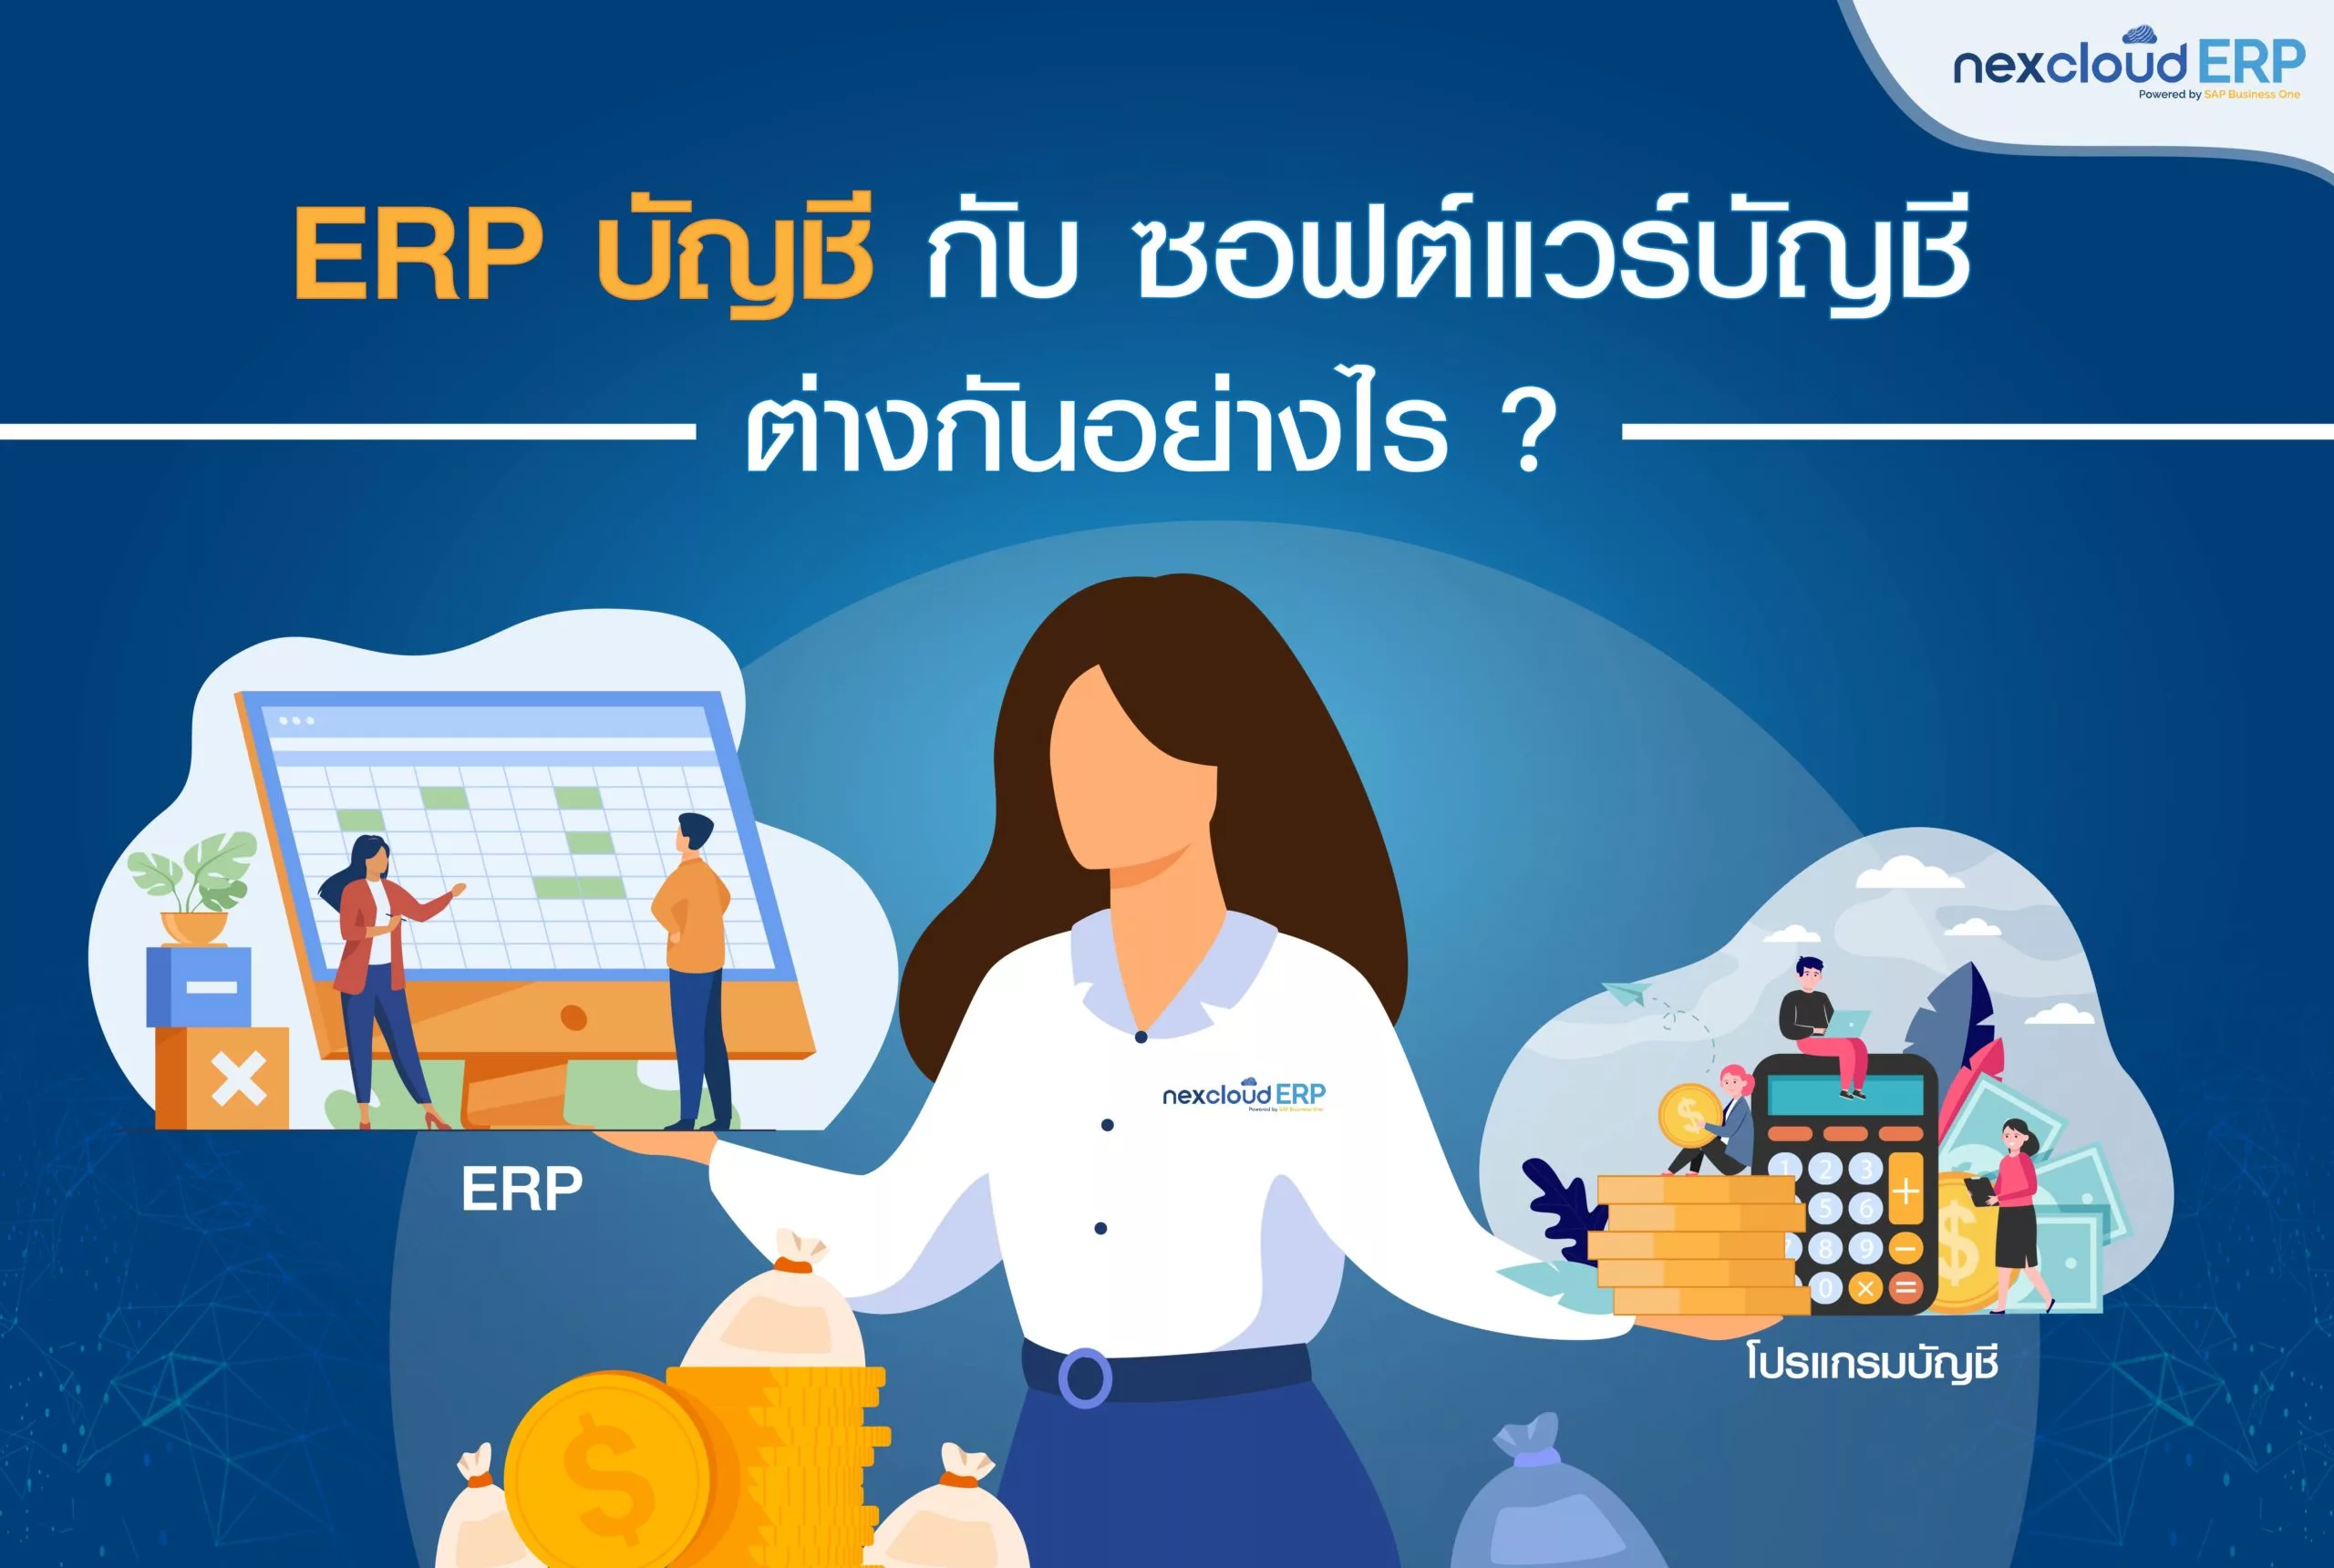 ERP บัญชี กับ โปรแกรม บัญชี ต่างกันยังไง ความแตกต่าง ข้อดี เลือกใช้อะไรดี